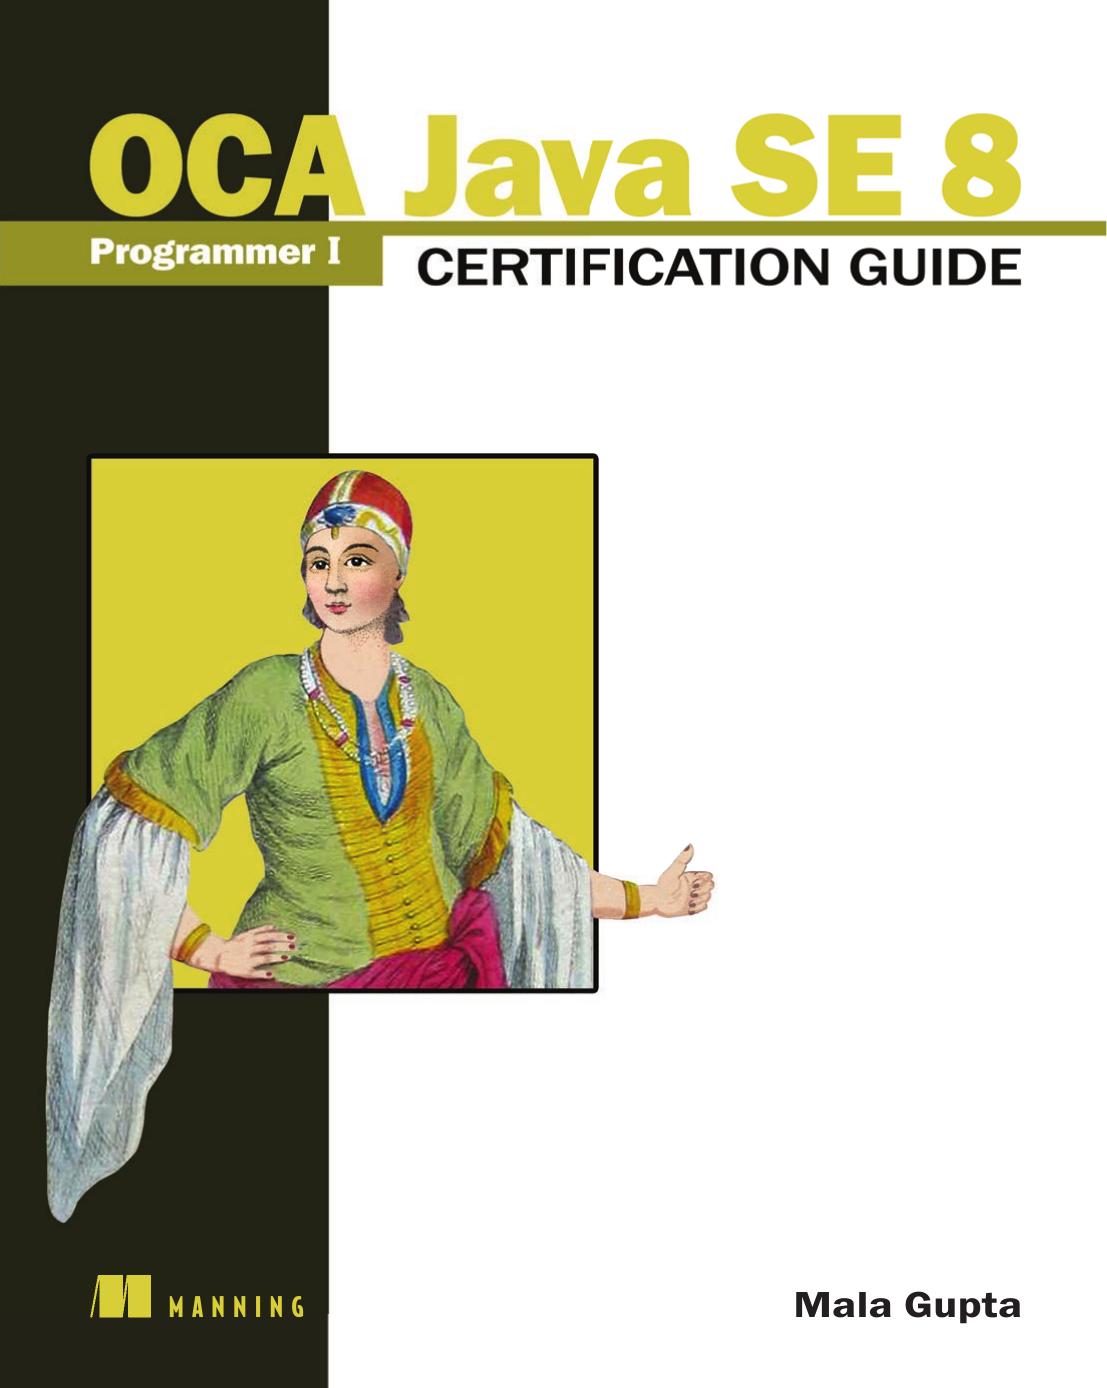 OCA Java SE 8 Programmer I Certification Guide by Mala Gupta